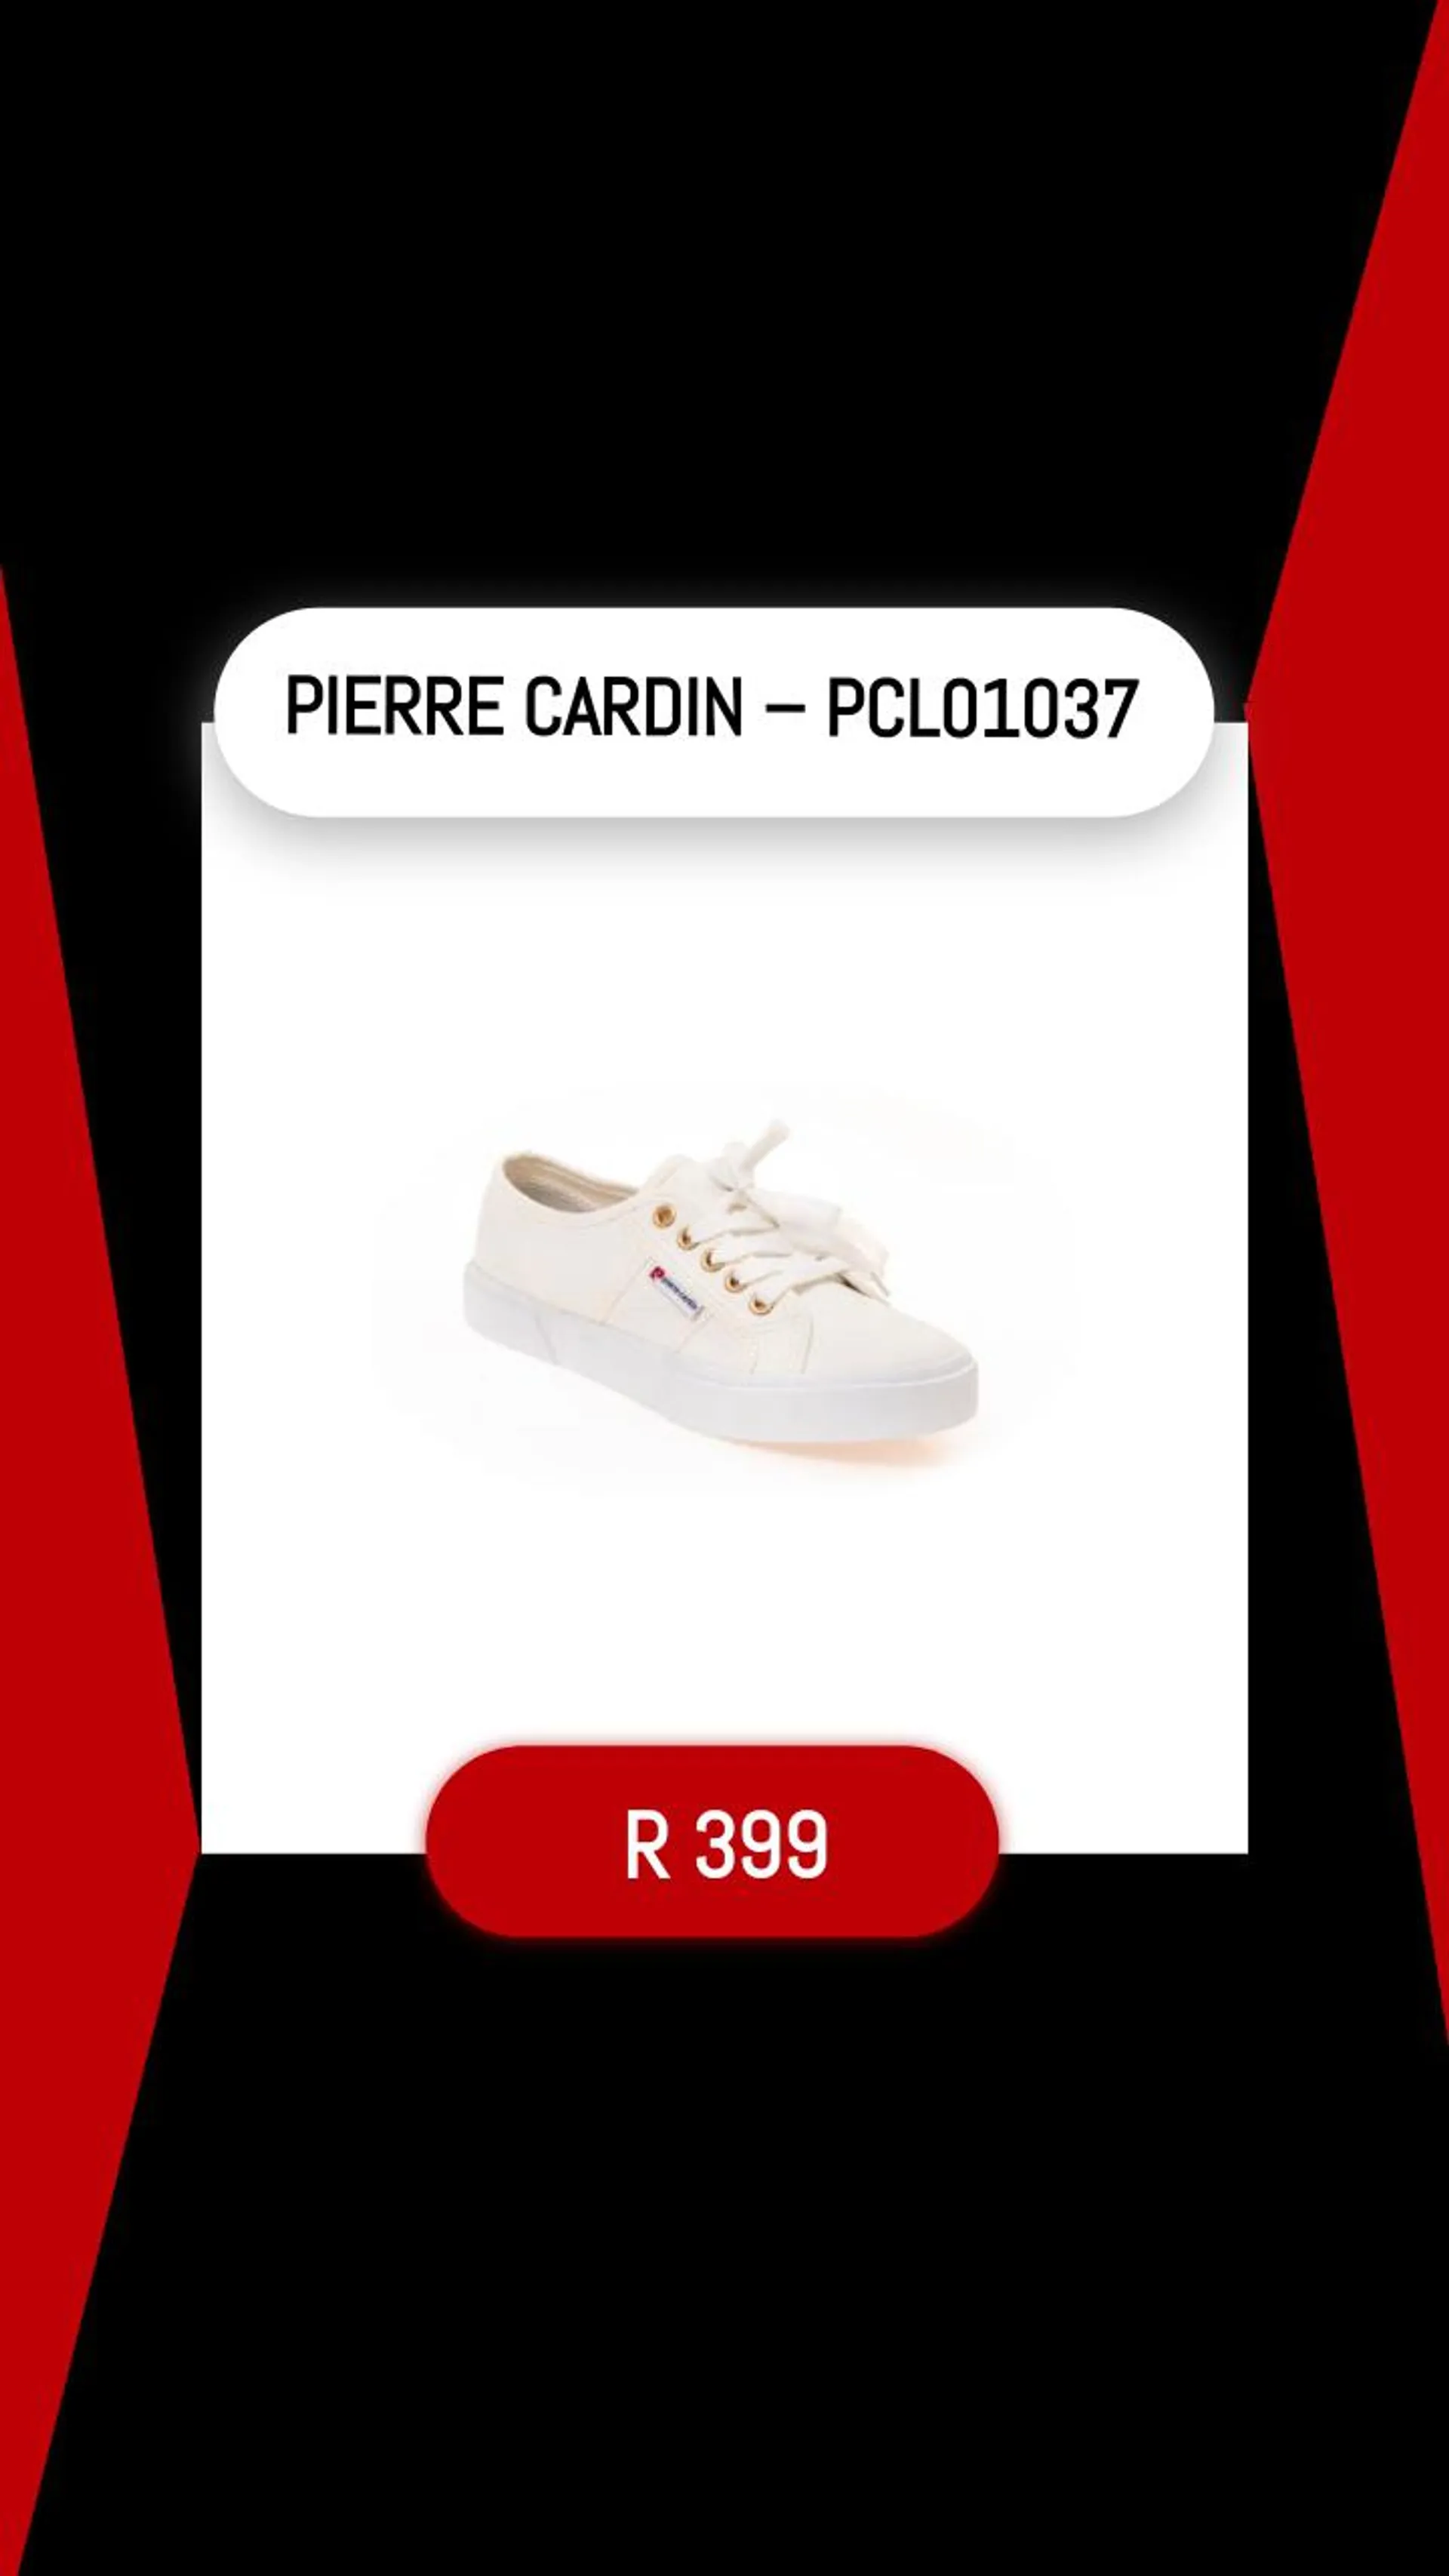 PIERRE CARDIN – PCL01037